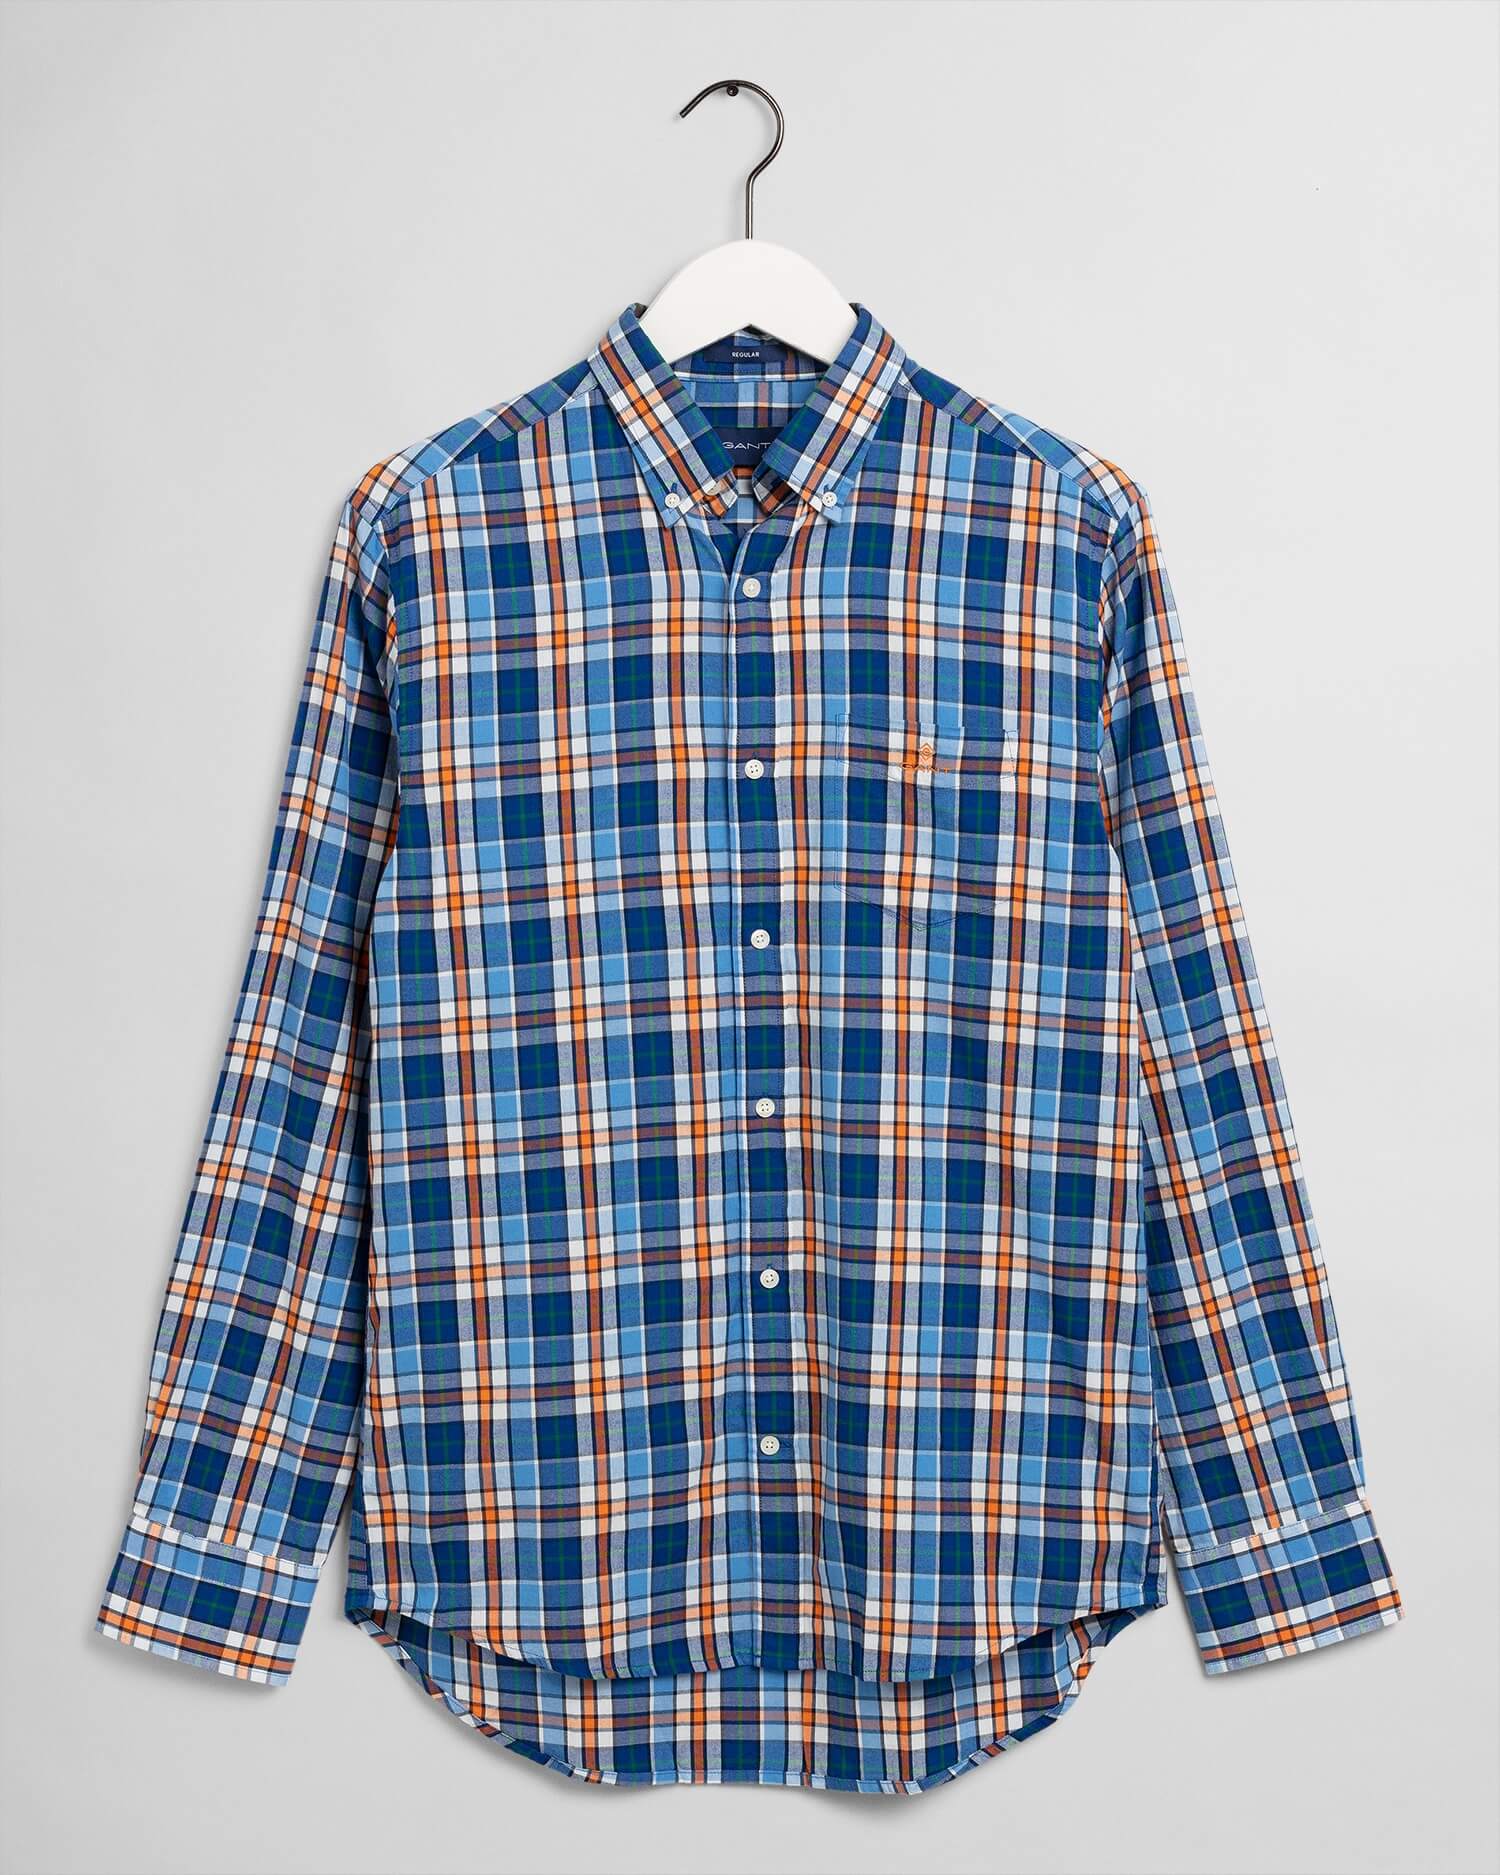 Gant Checkered Shirt in Blue & Orange